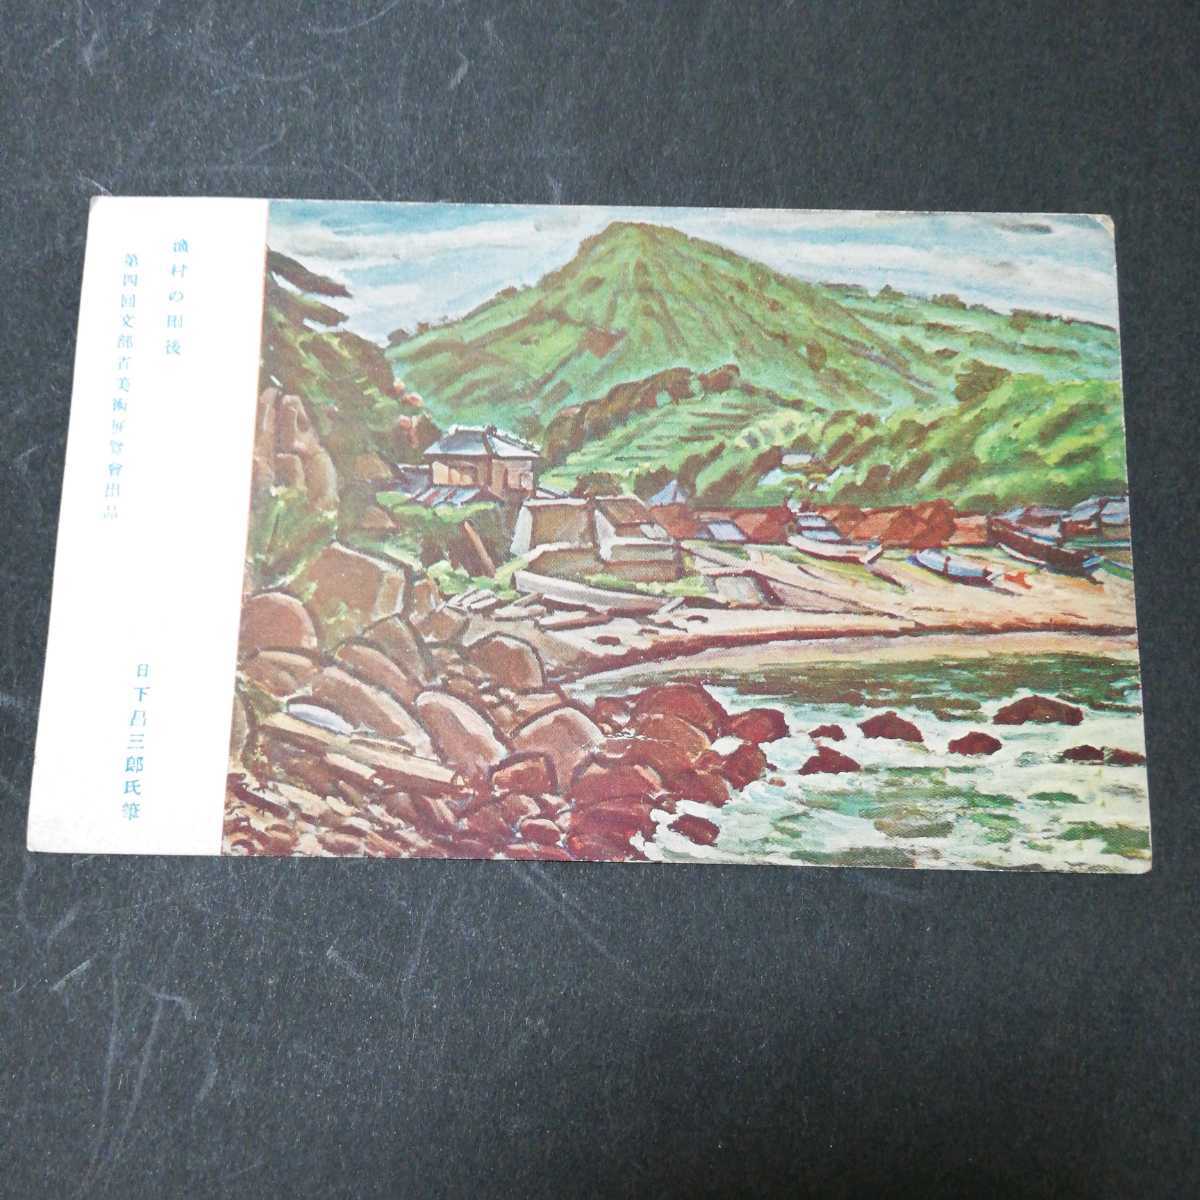 पोस्टकार्ड: बारिश के बाद मछली पकड़ने वाला गांव, शोज़ाबुरो कुसाका द्वारा पोस्टकार्ड पेंटिंग्स, रयोहिन सेनका आर्ट द्वारा, प्रिंट करने की सामग्री, पोस्टकार्ड, पोस्टकार्ड, अन्य